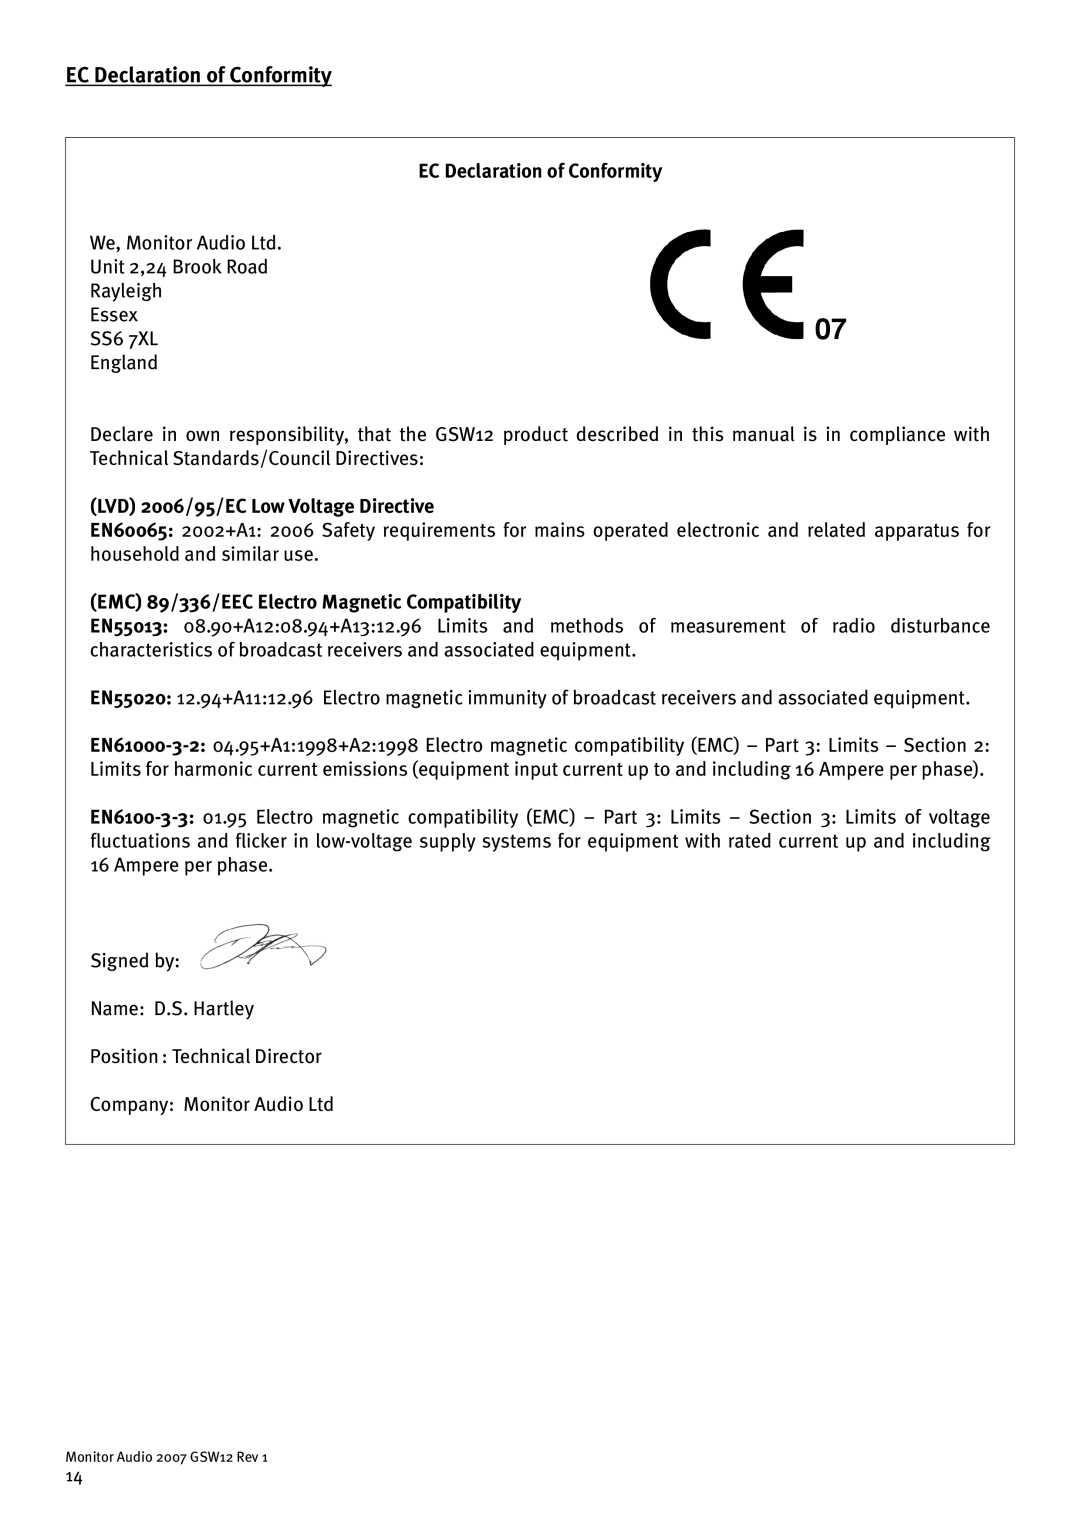 Monitor Audio GSW12 user manual EC Declaration of Conformity, LVD 2006/95/EC Low Voltage Directive 